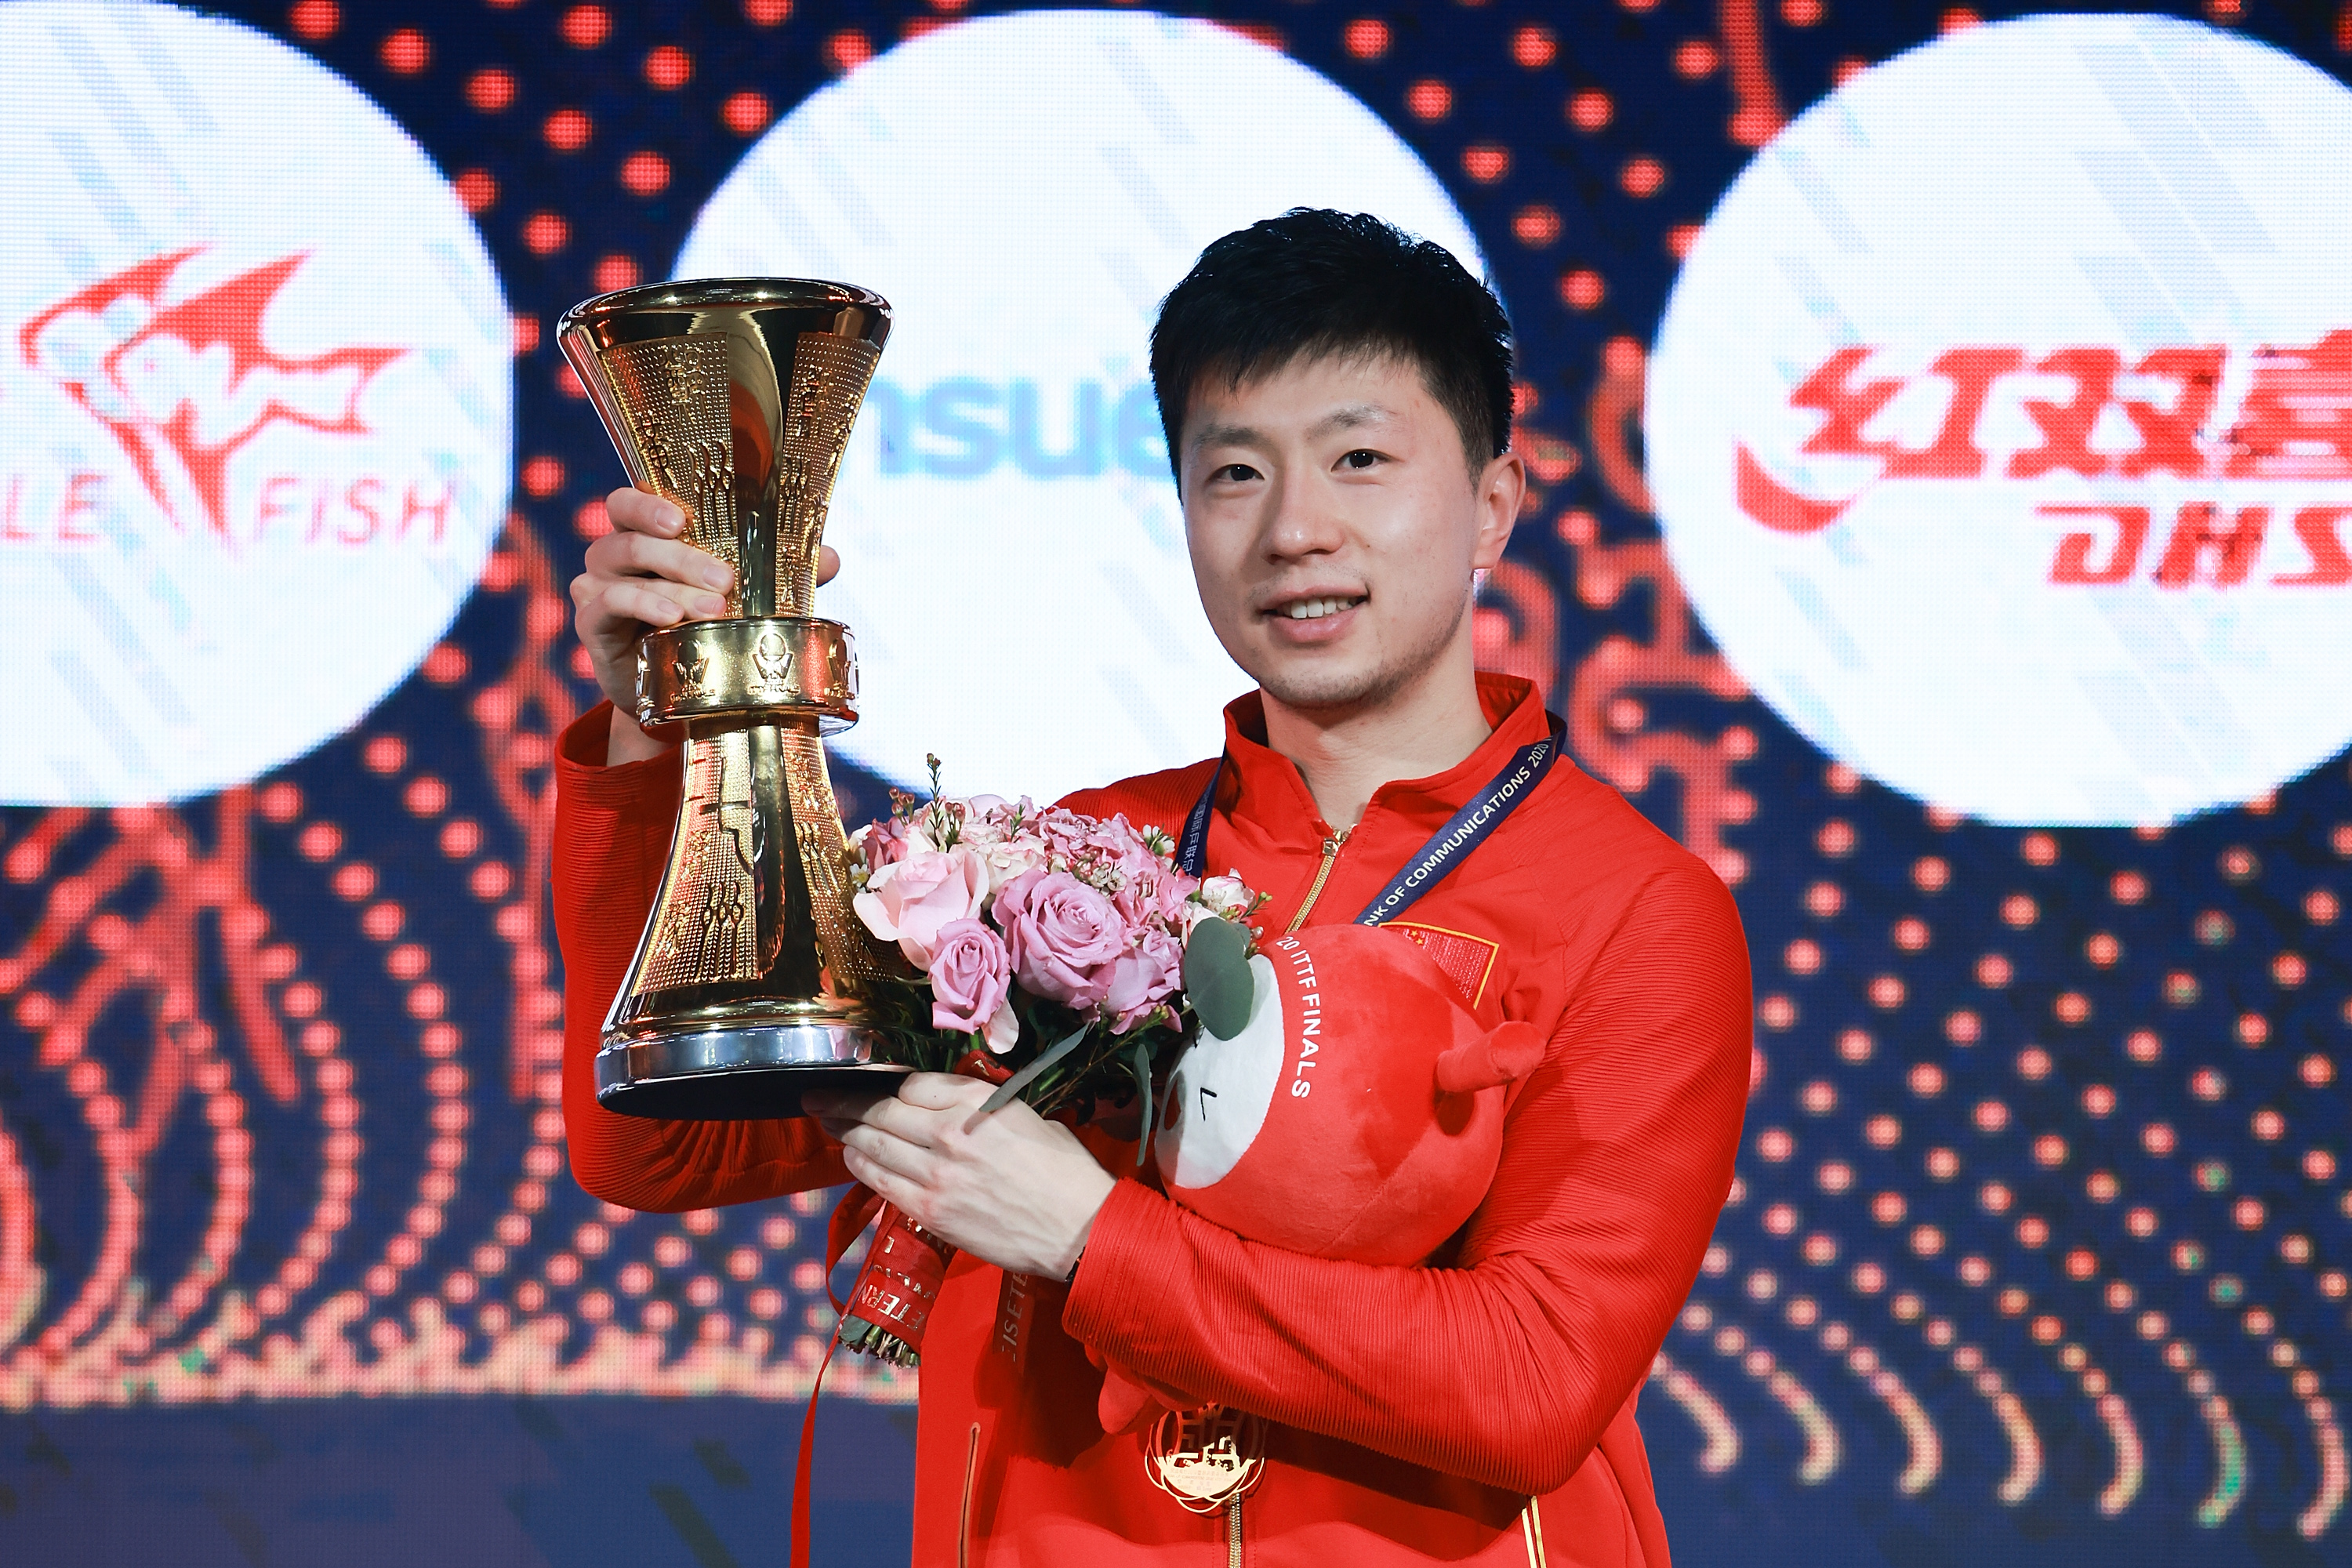 马龙拿下国际乒联总决赛男单冠军